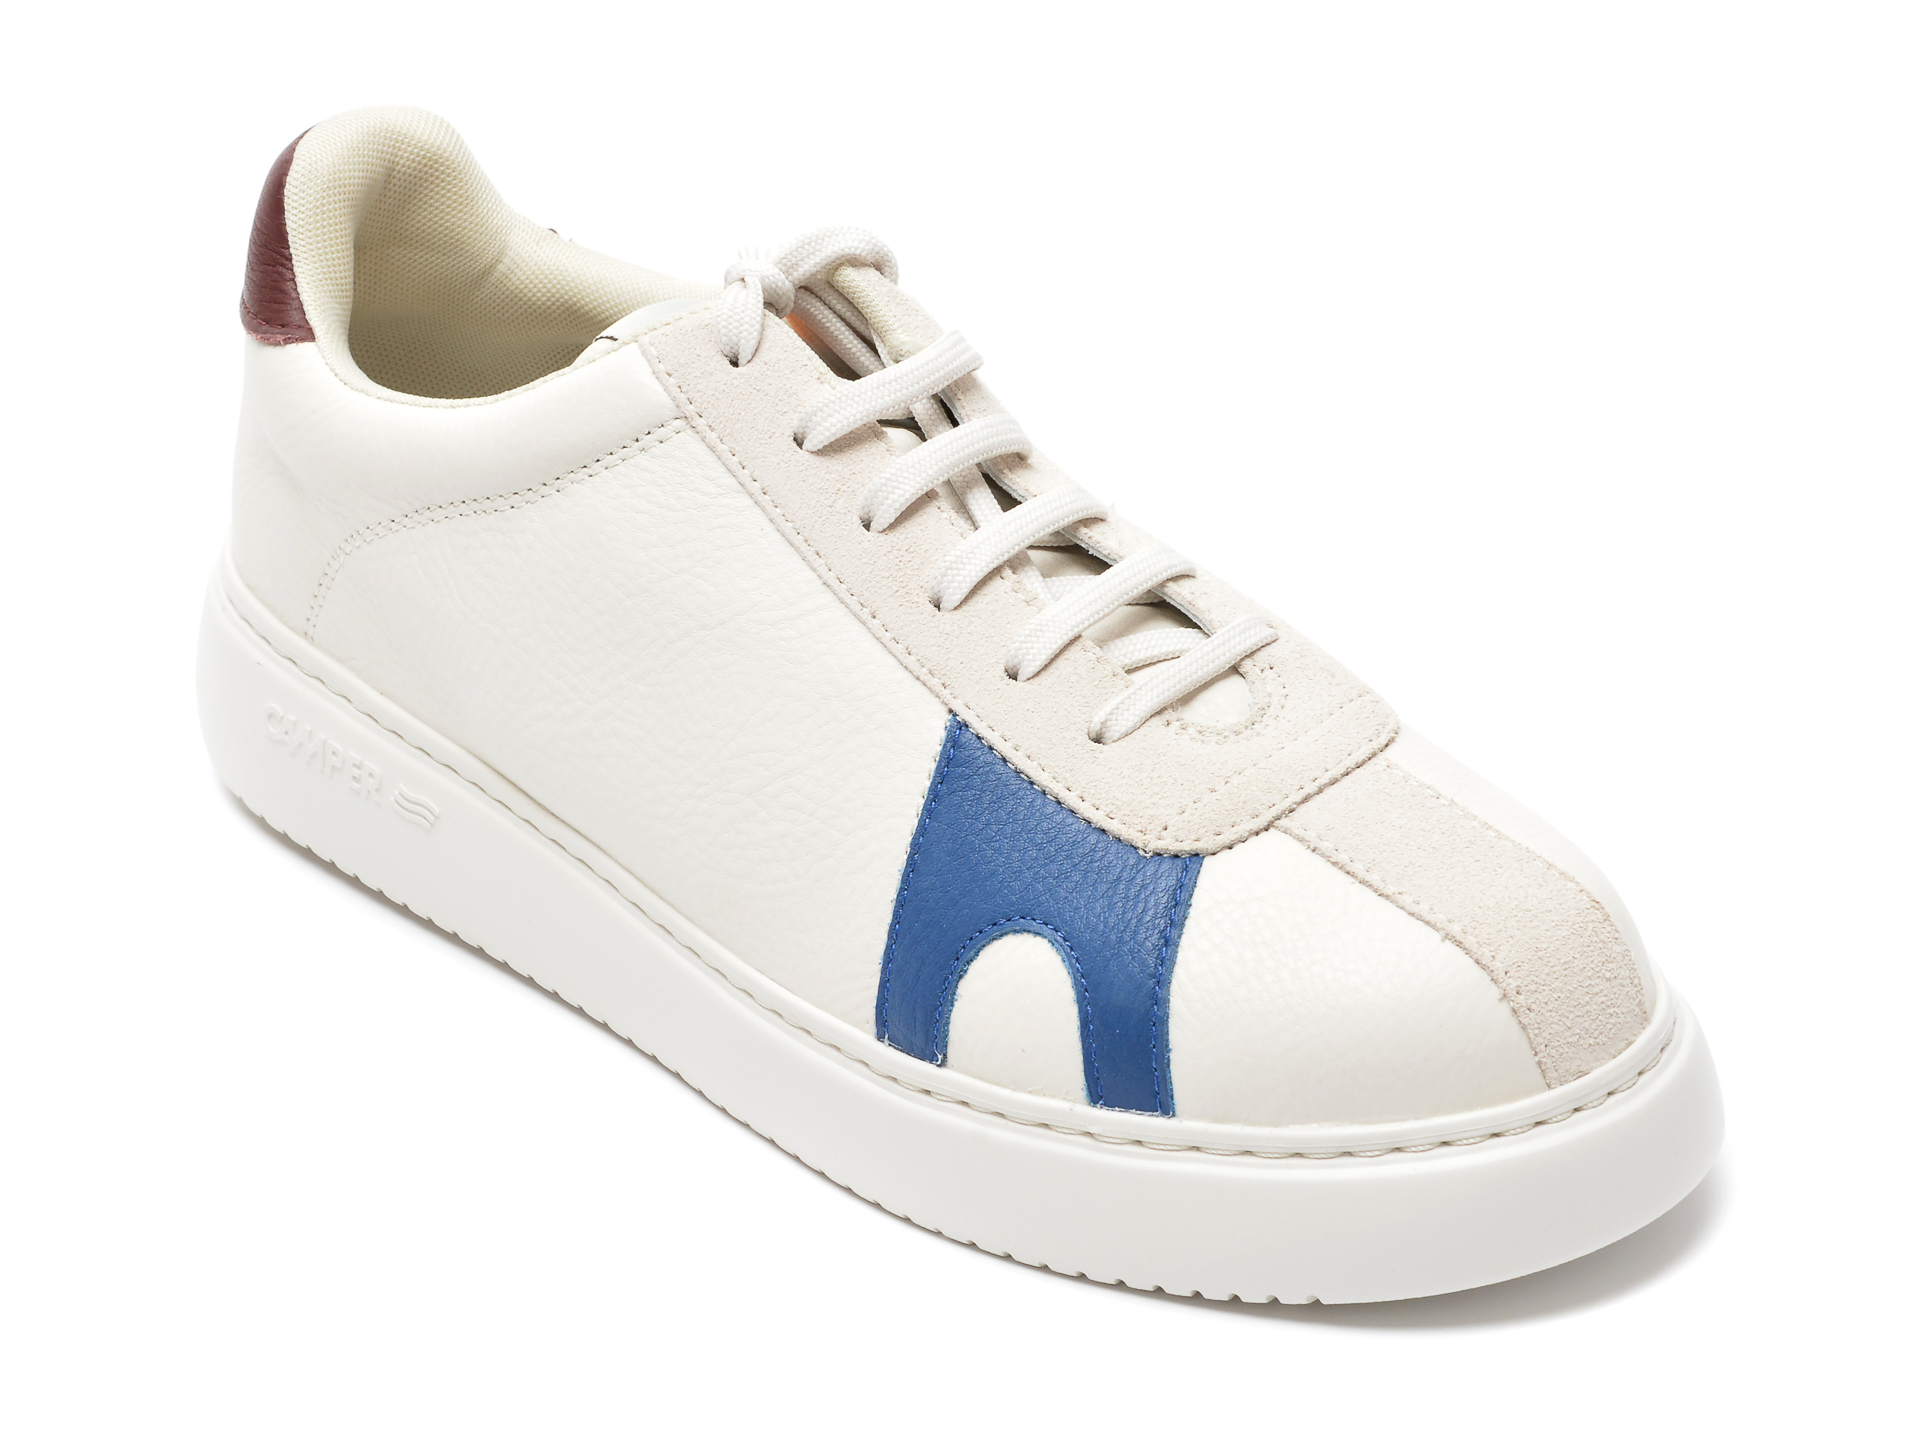 Pantofi CAMPER albi, K100743, din piele naturala 2023 ❤️ Pret Super Black Friday otter.ro imagine noua 2022